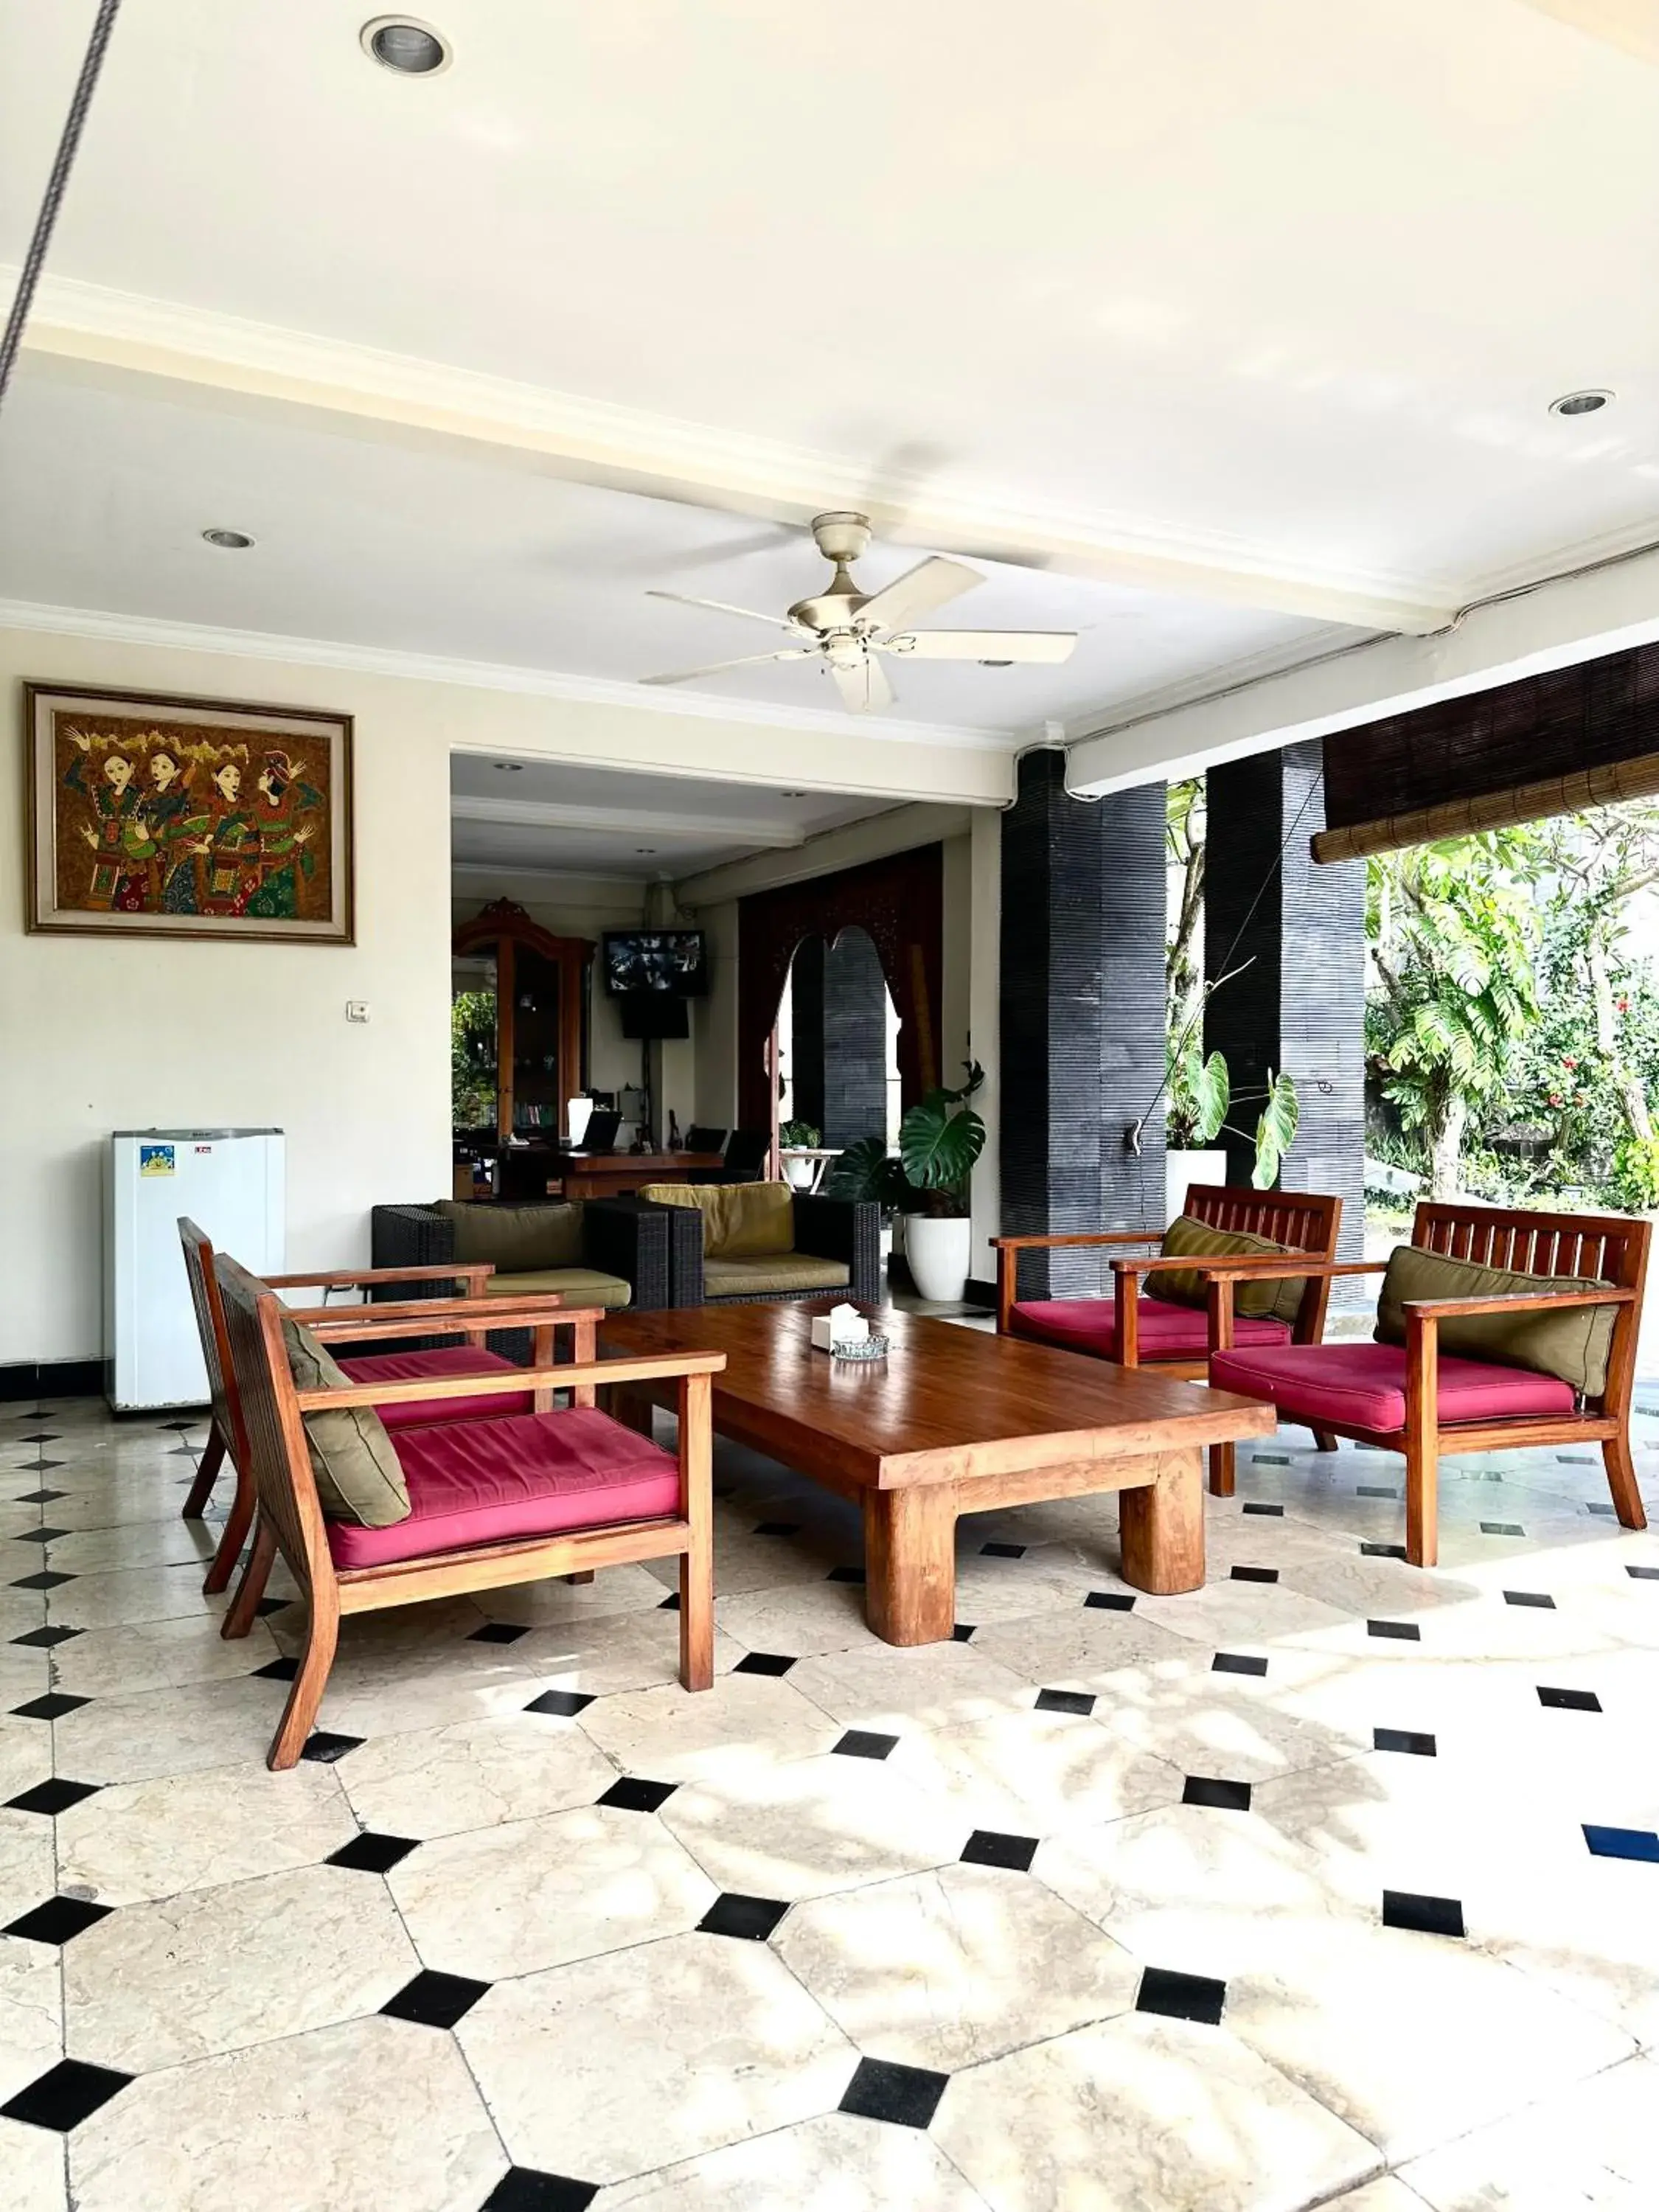 Lobby or reception, Lobby/Reception in Radha Bali Hotel